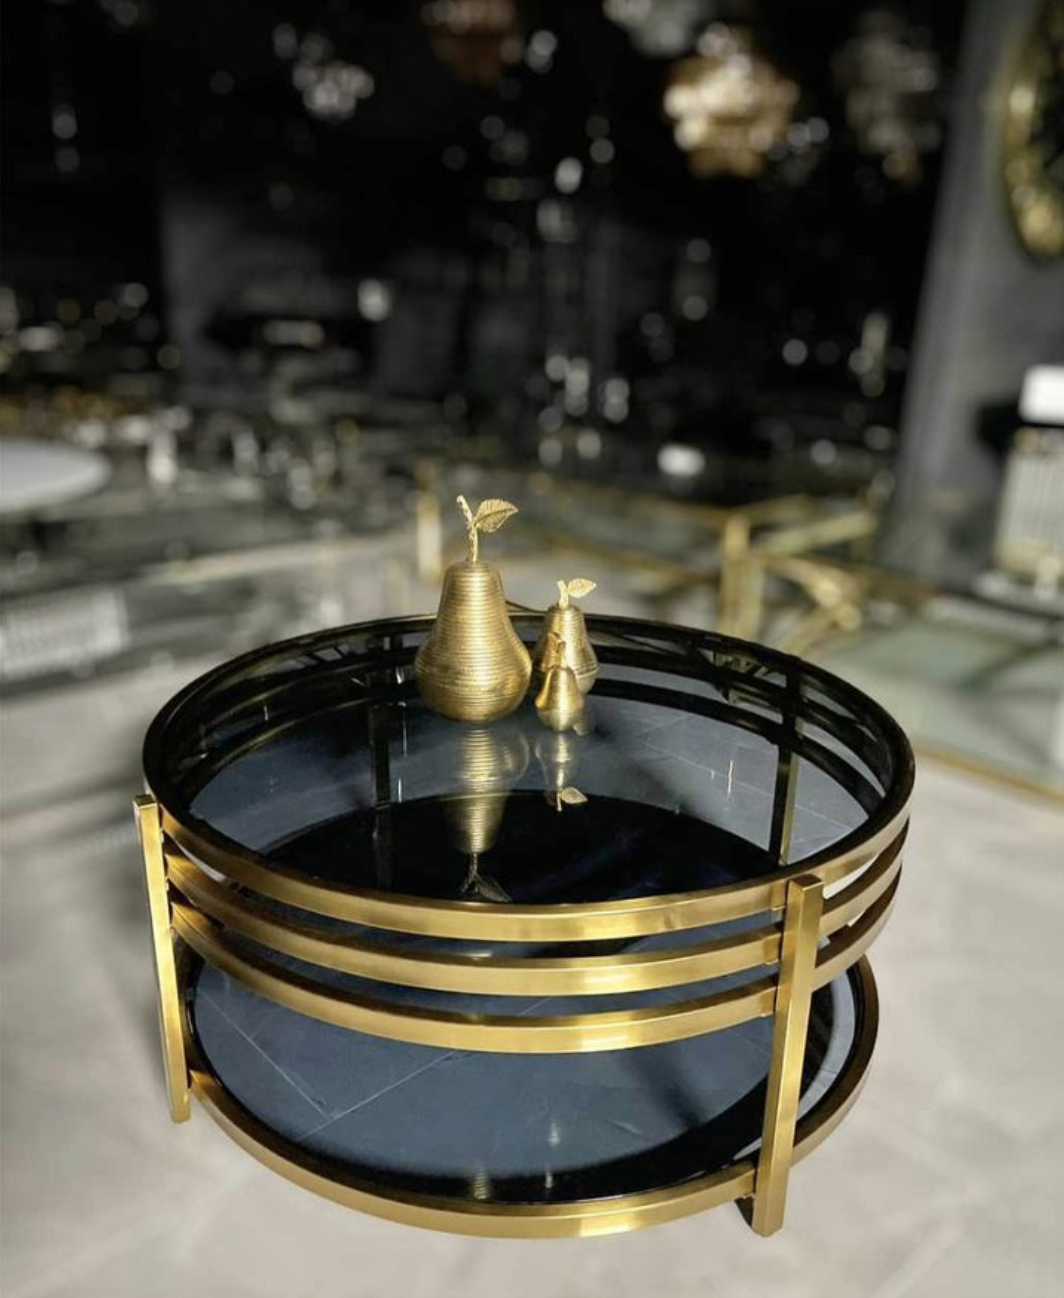 boezem Realistisch Regeneratie Salontafel goud smoke glas, shop online bij Bazaaronline.nl - Bazaaronline